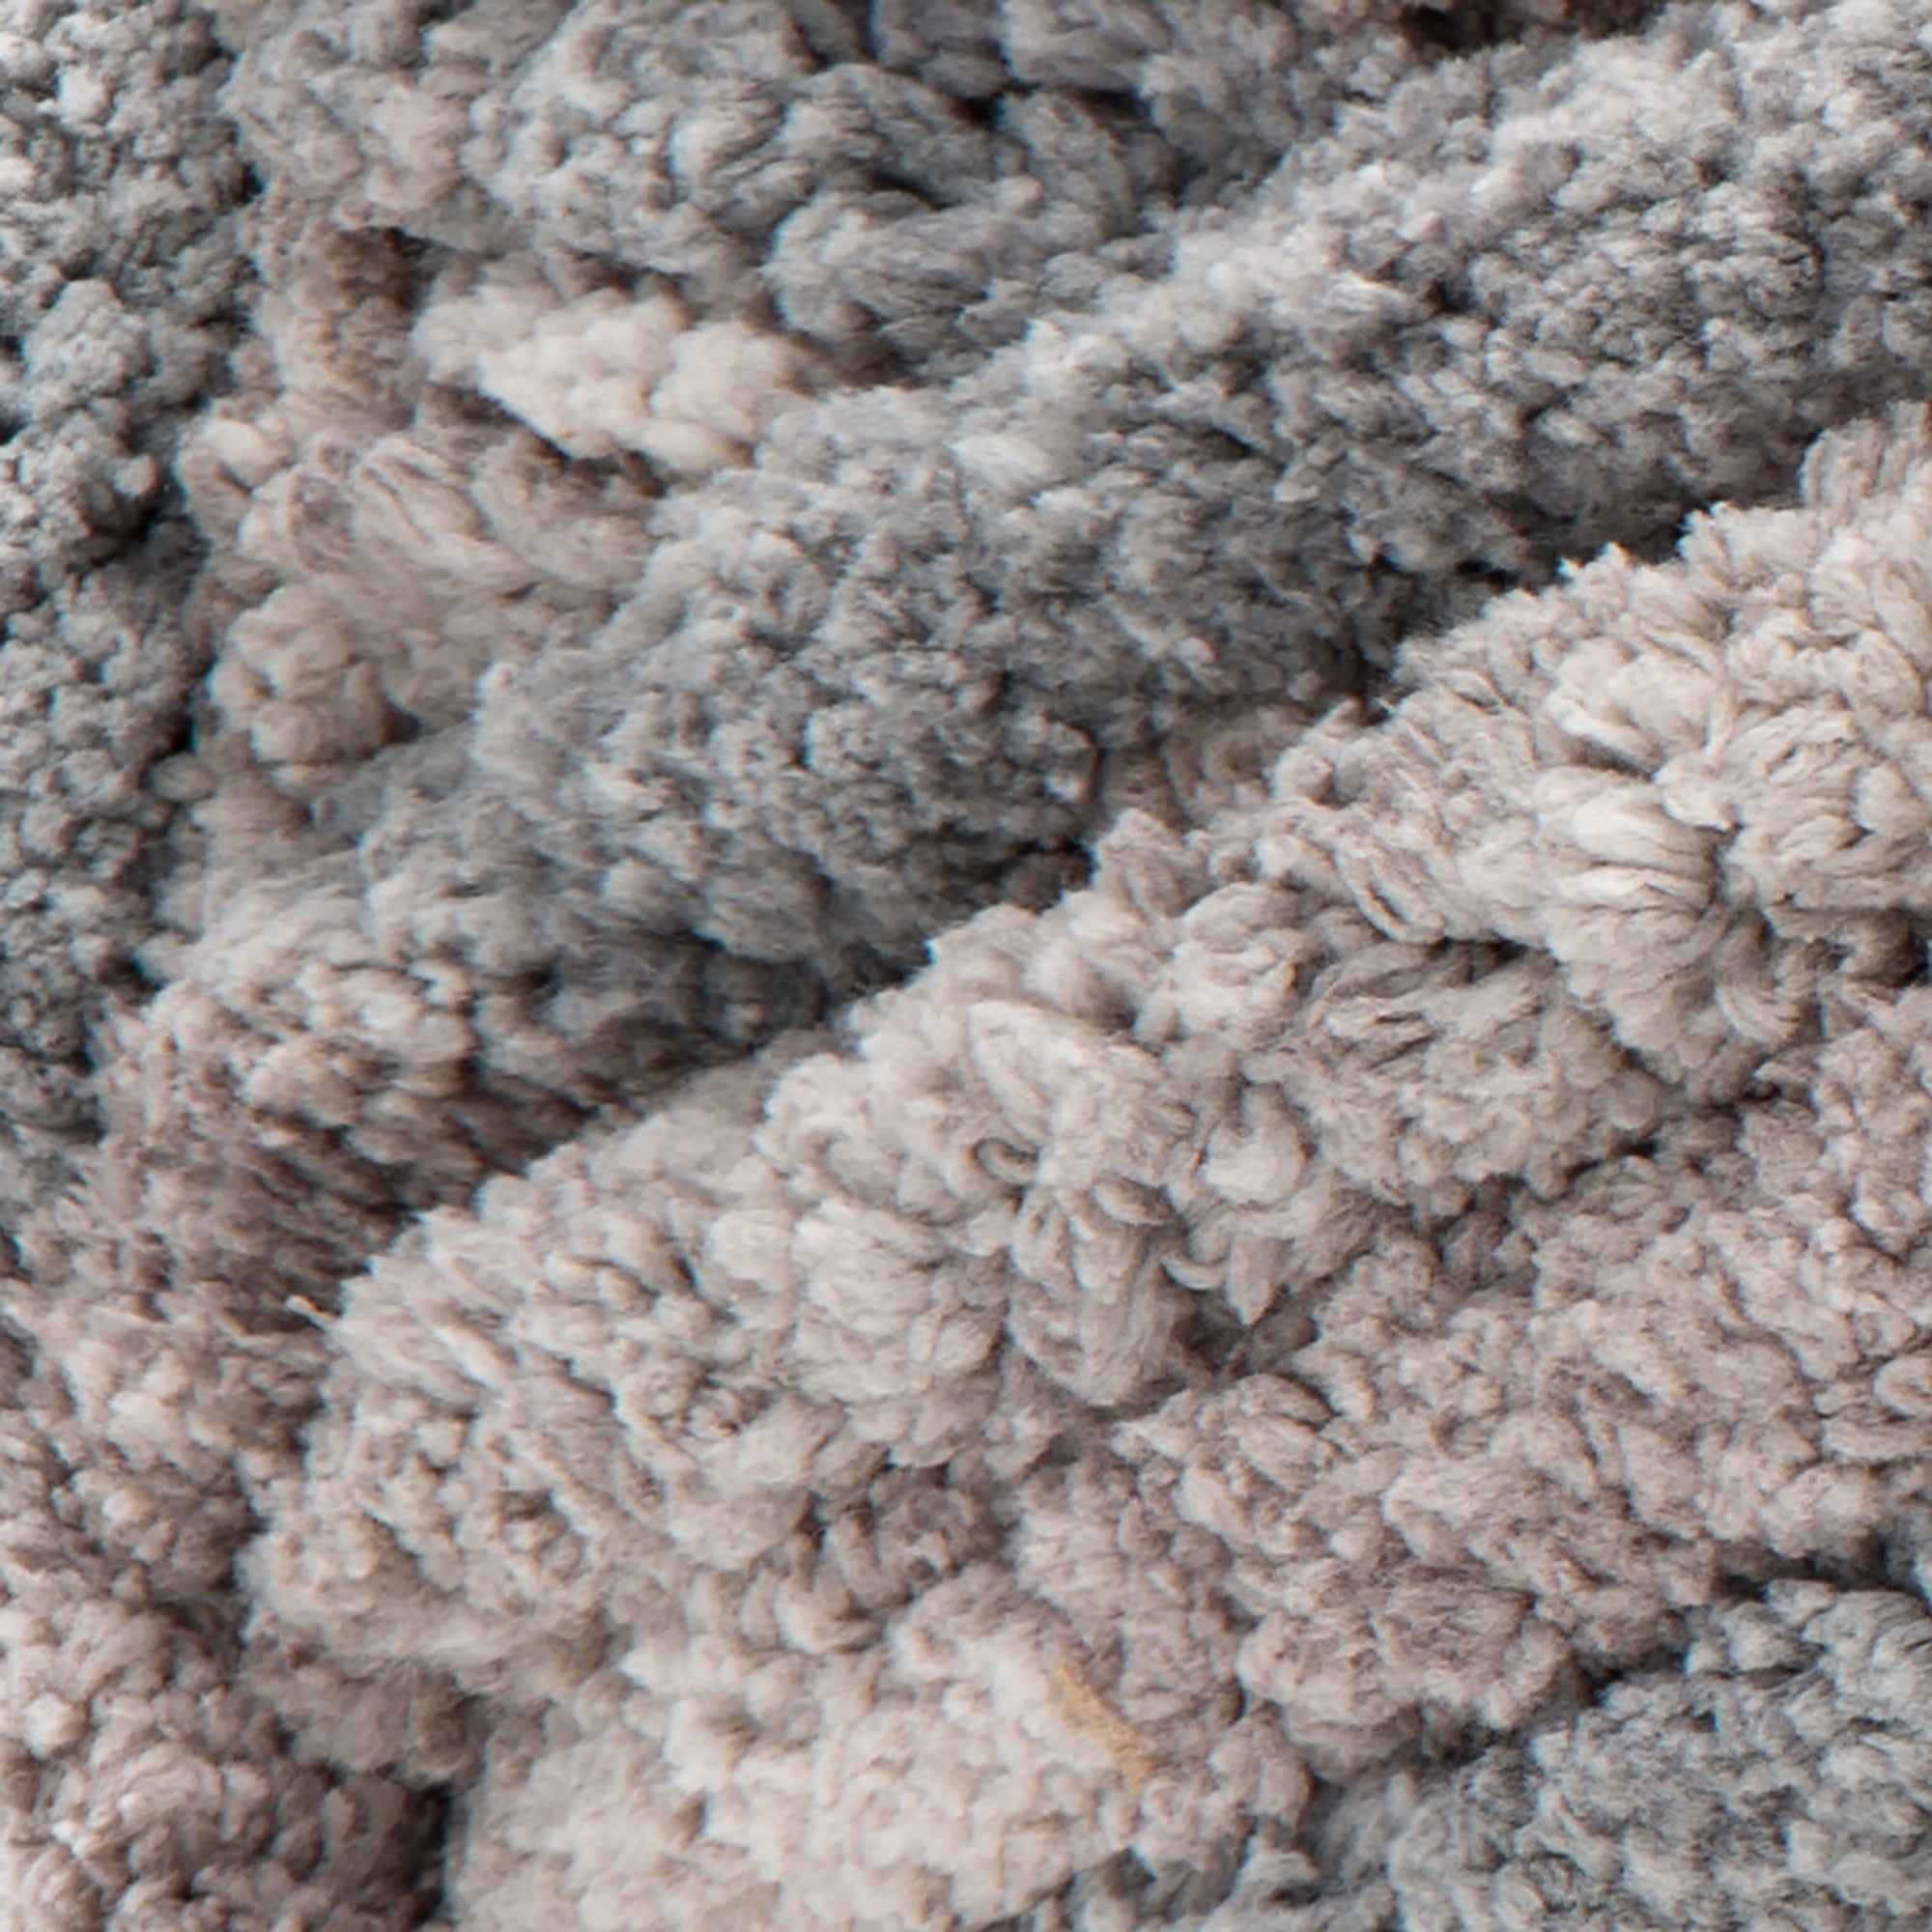 Bernat Blanket Extra Thick Blue Raspberry Yarn-1 Pack of  600g/21oz-Polyester-7 Jumbo-Knitting/Crochet